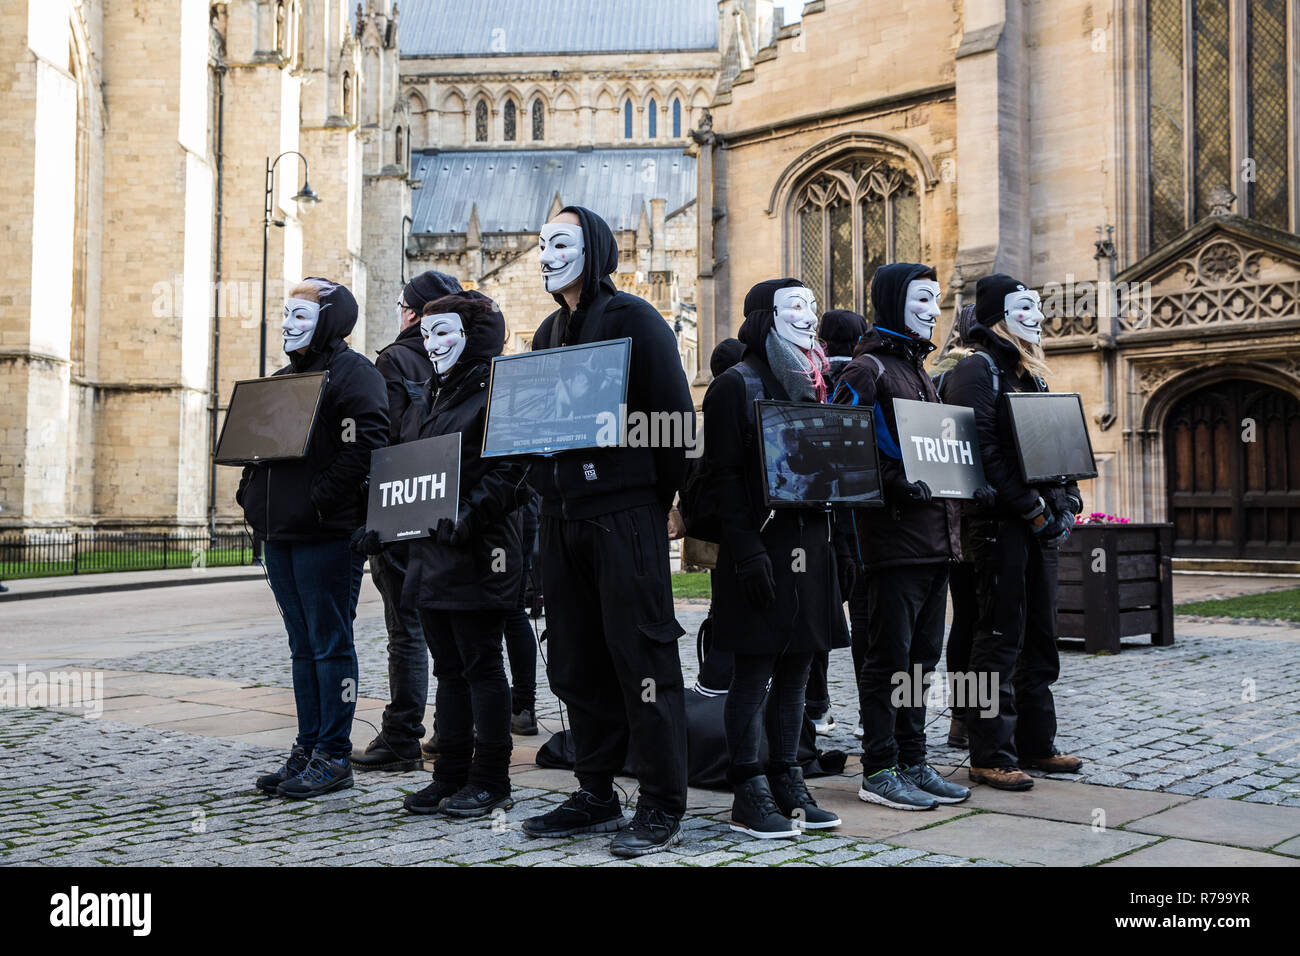 YORK, UK - 8 décembre 2018. Les membres du cube de vérité dans le groupe de protestation Vegan Guy Fawks masques et protestaient contre la cruauté envers les animaux. Banque D'Images